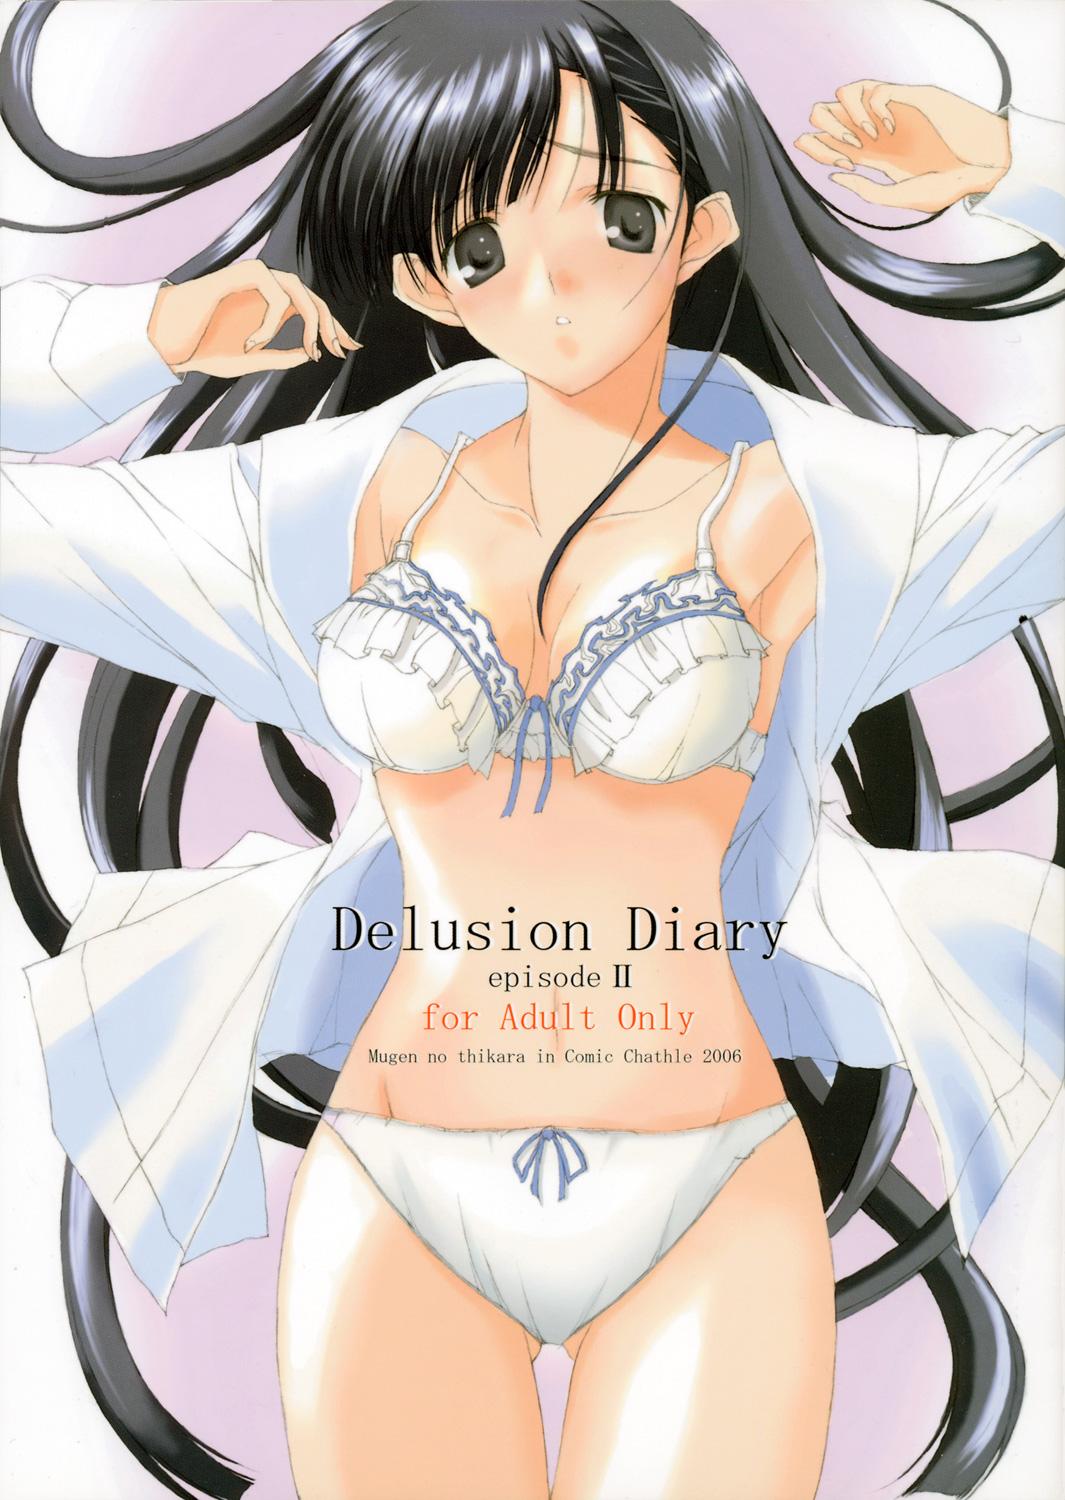 Delusion Diary episode II 0